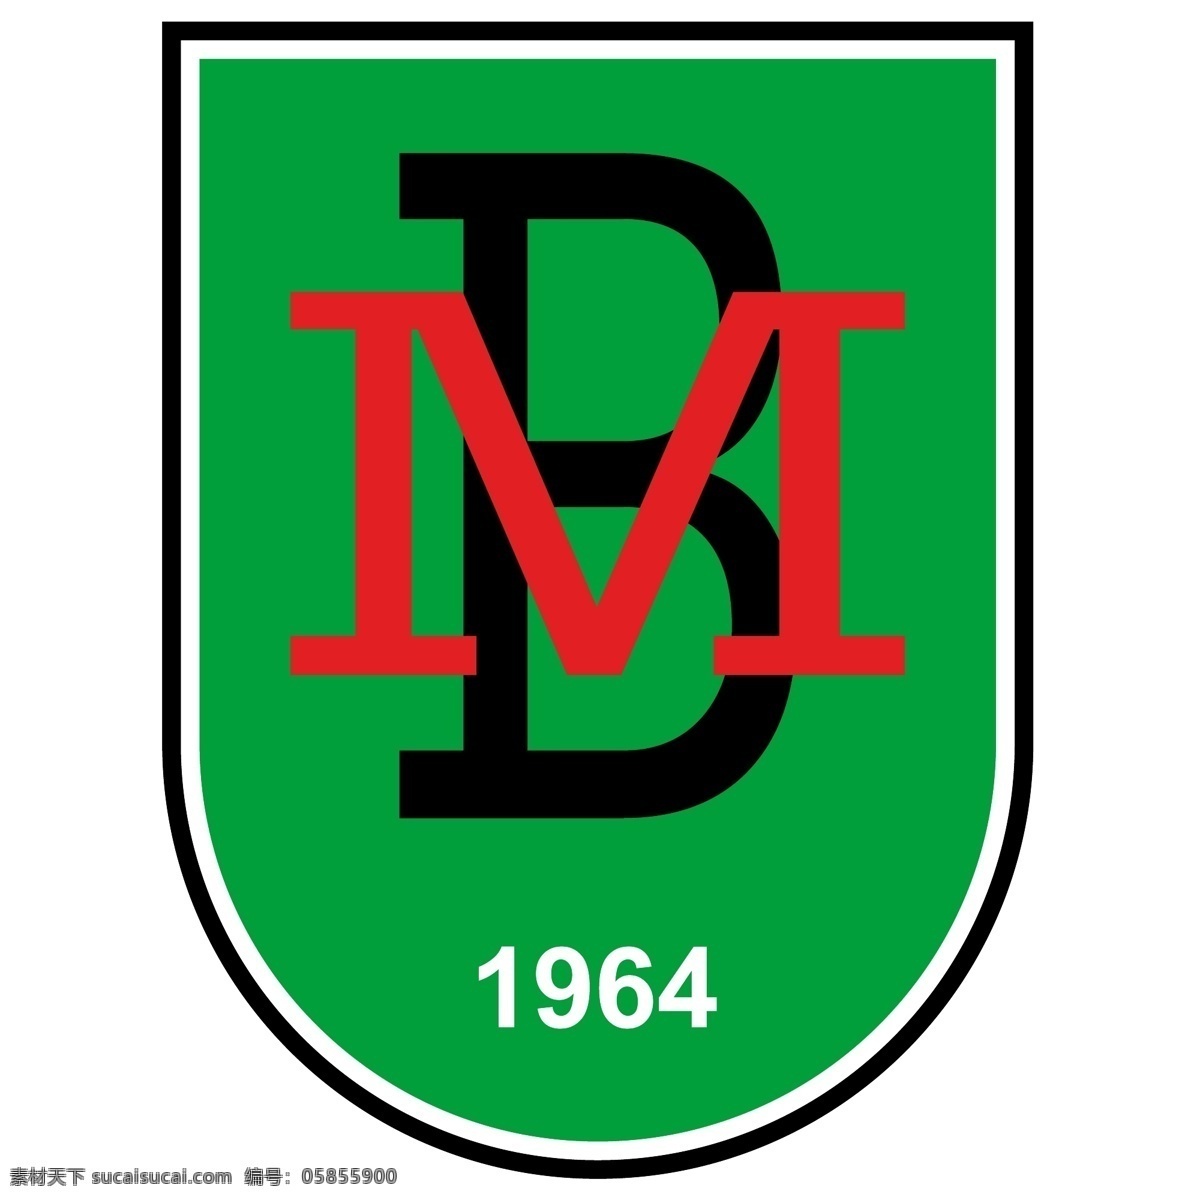 1964 bm 盾牌 logo logo设计 绿色 白色